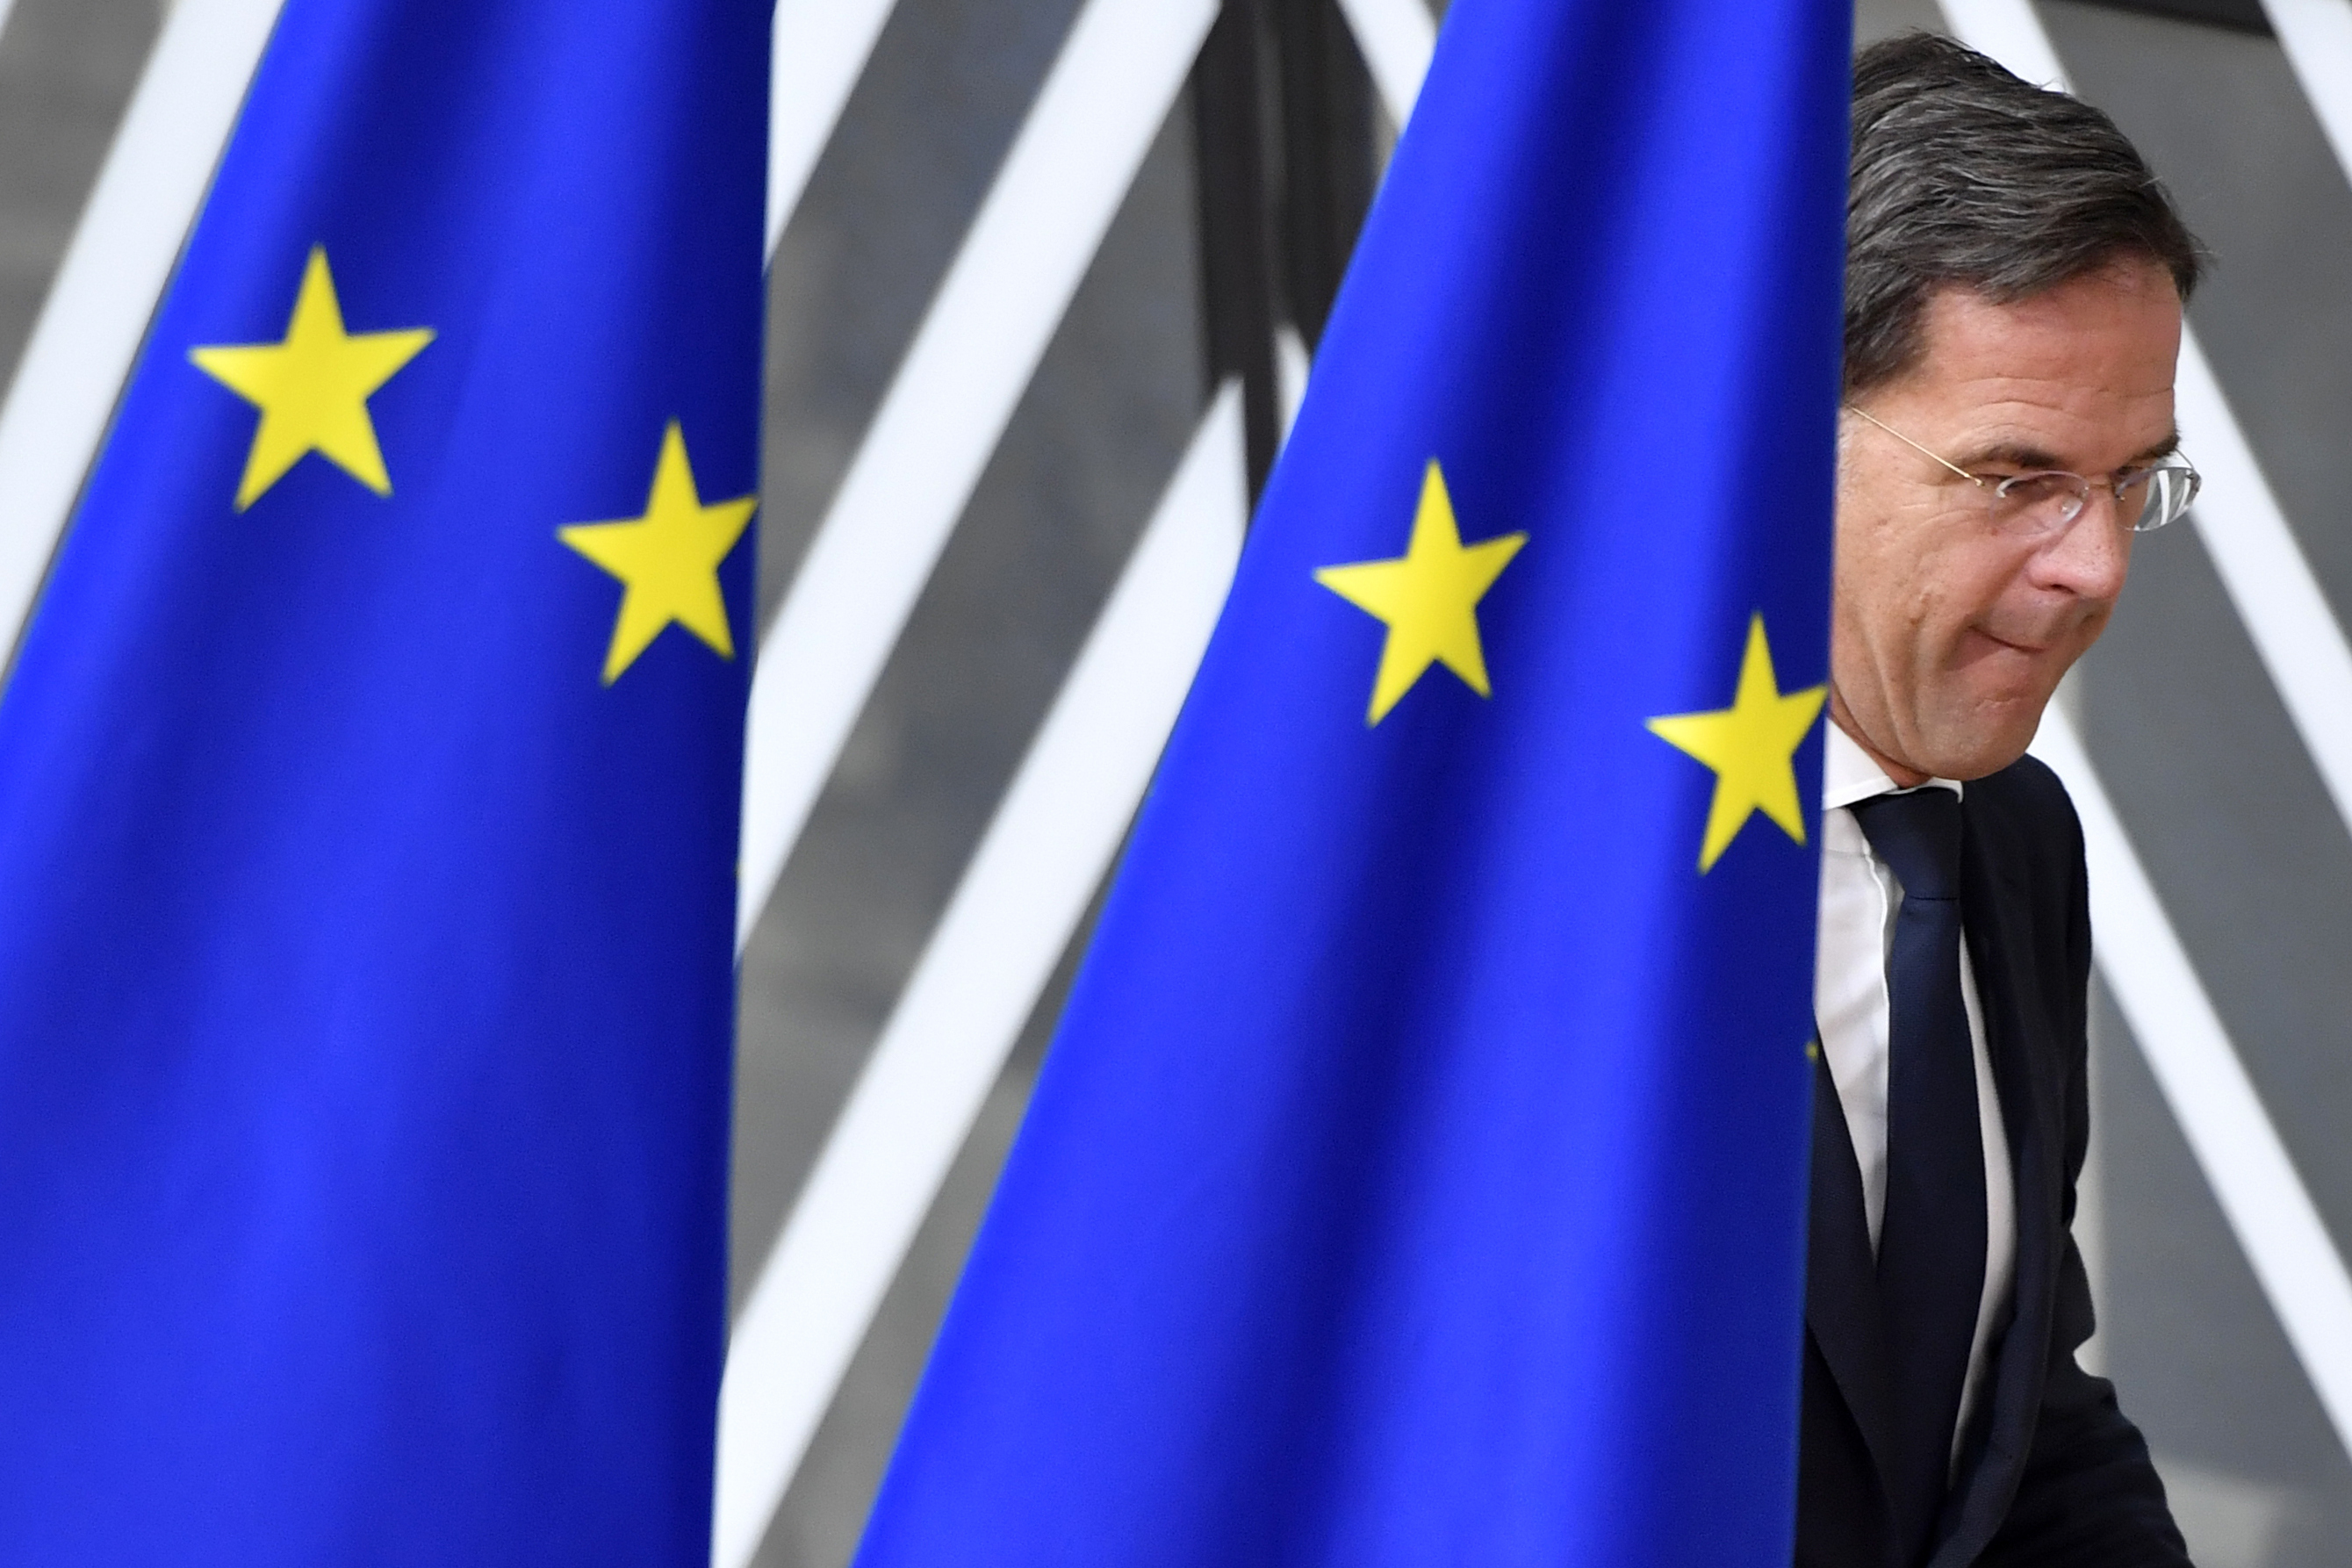 Der niederländische MP erscheint zum EU-Gipfel